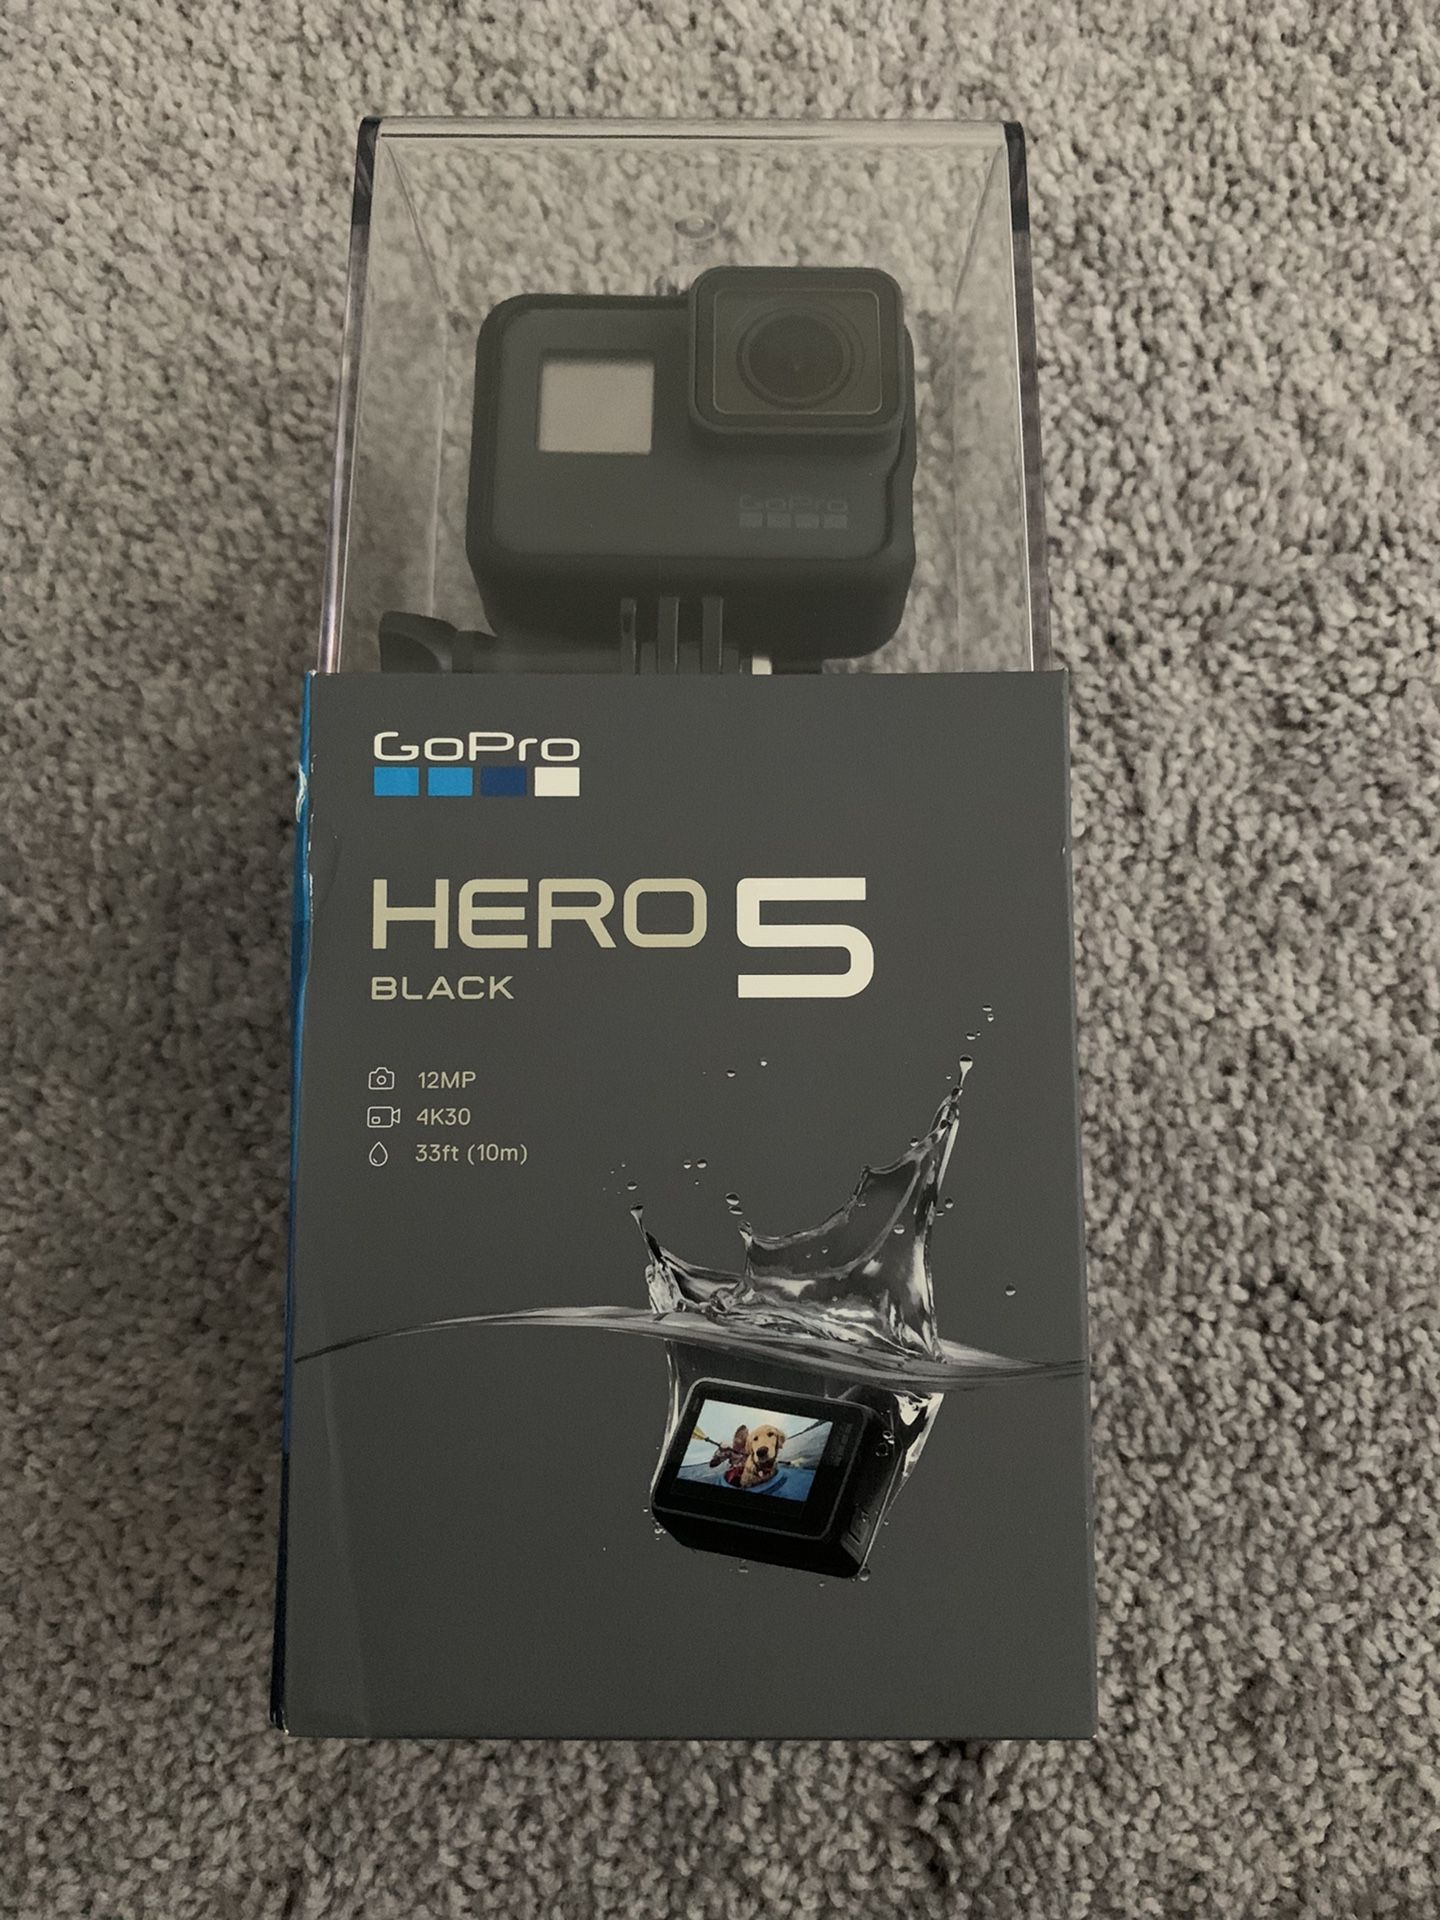 Brand New GoPro Hero 5 SKU# CHDHX-502